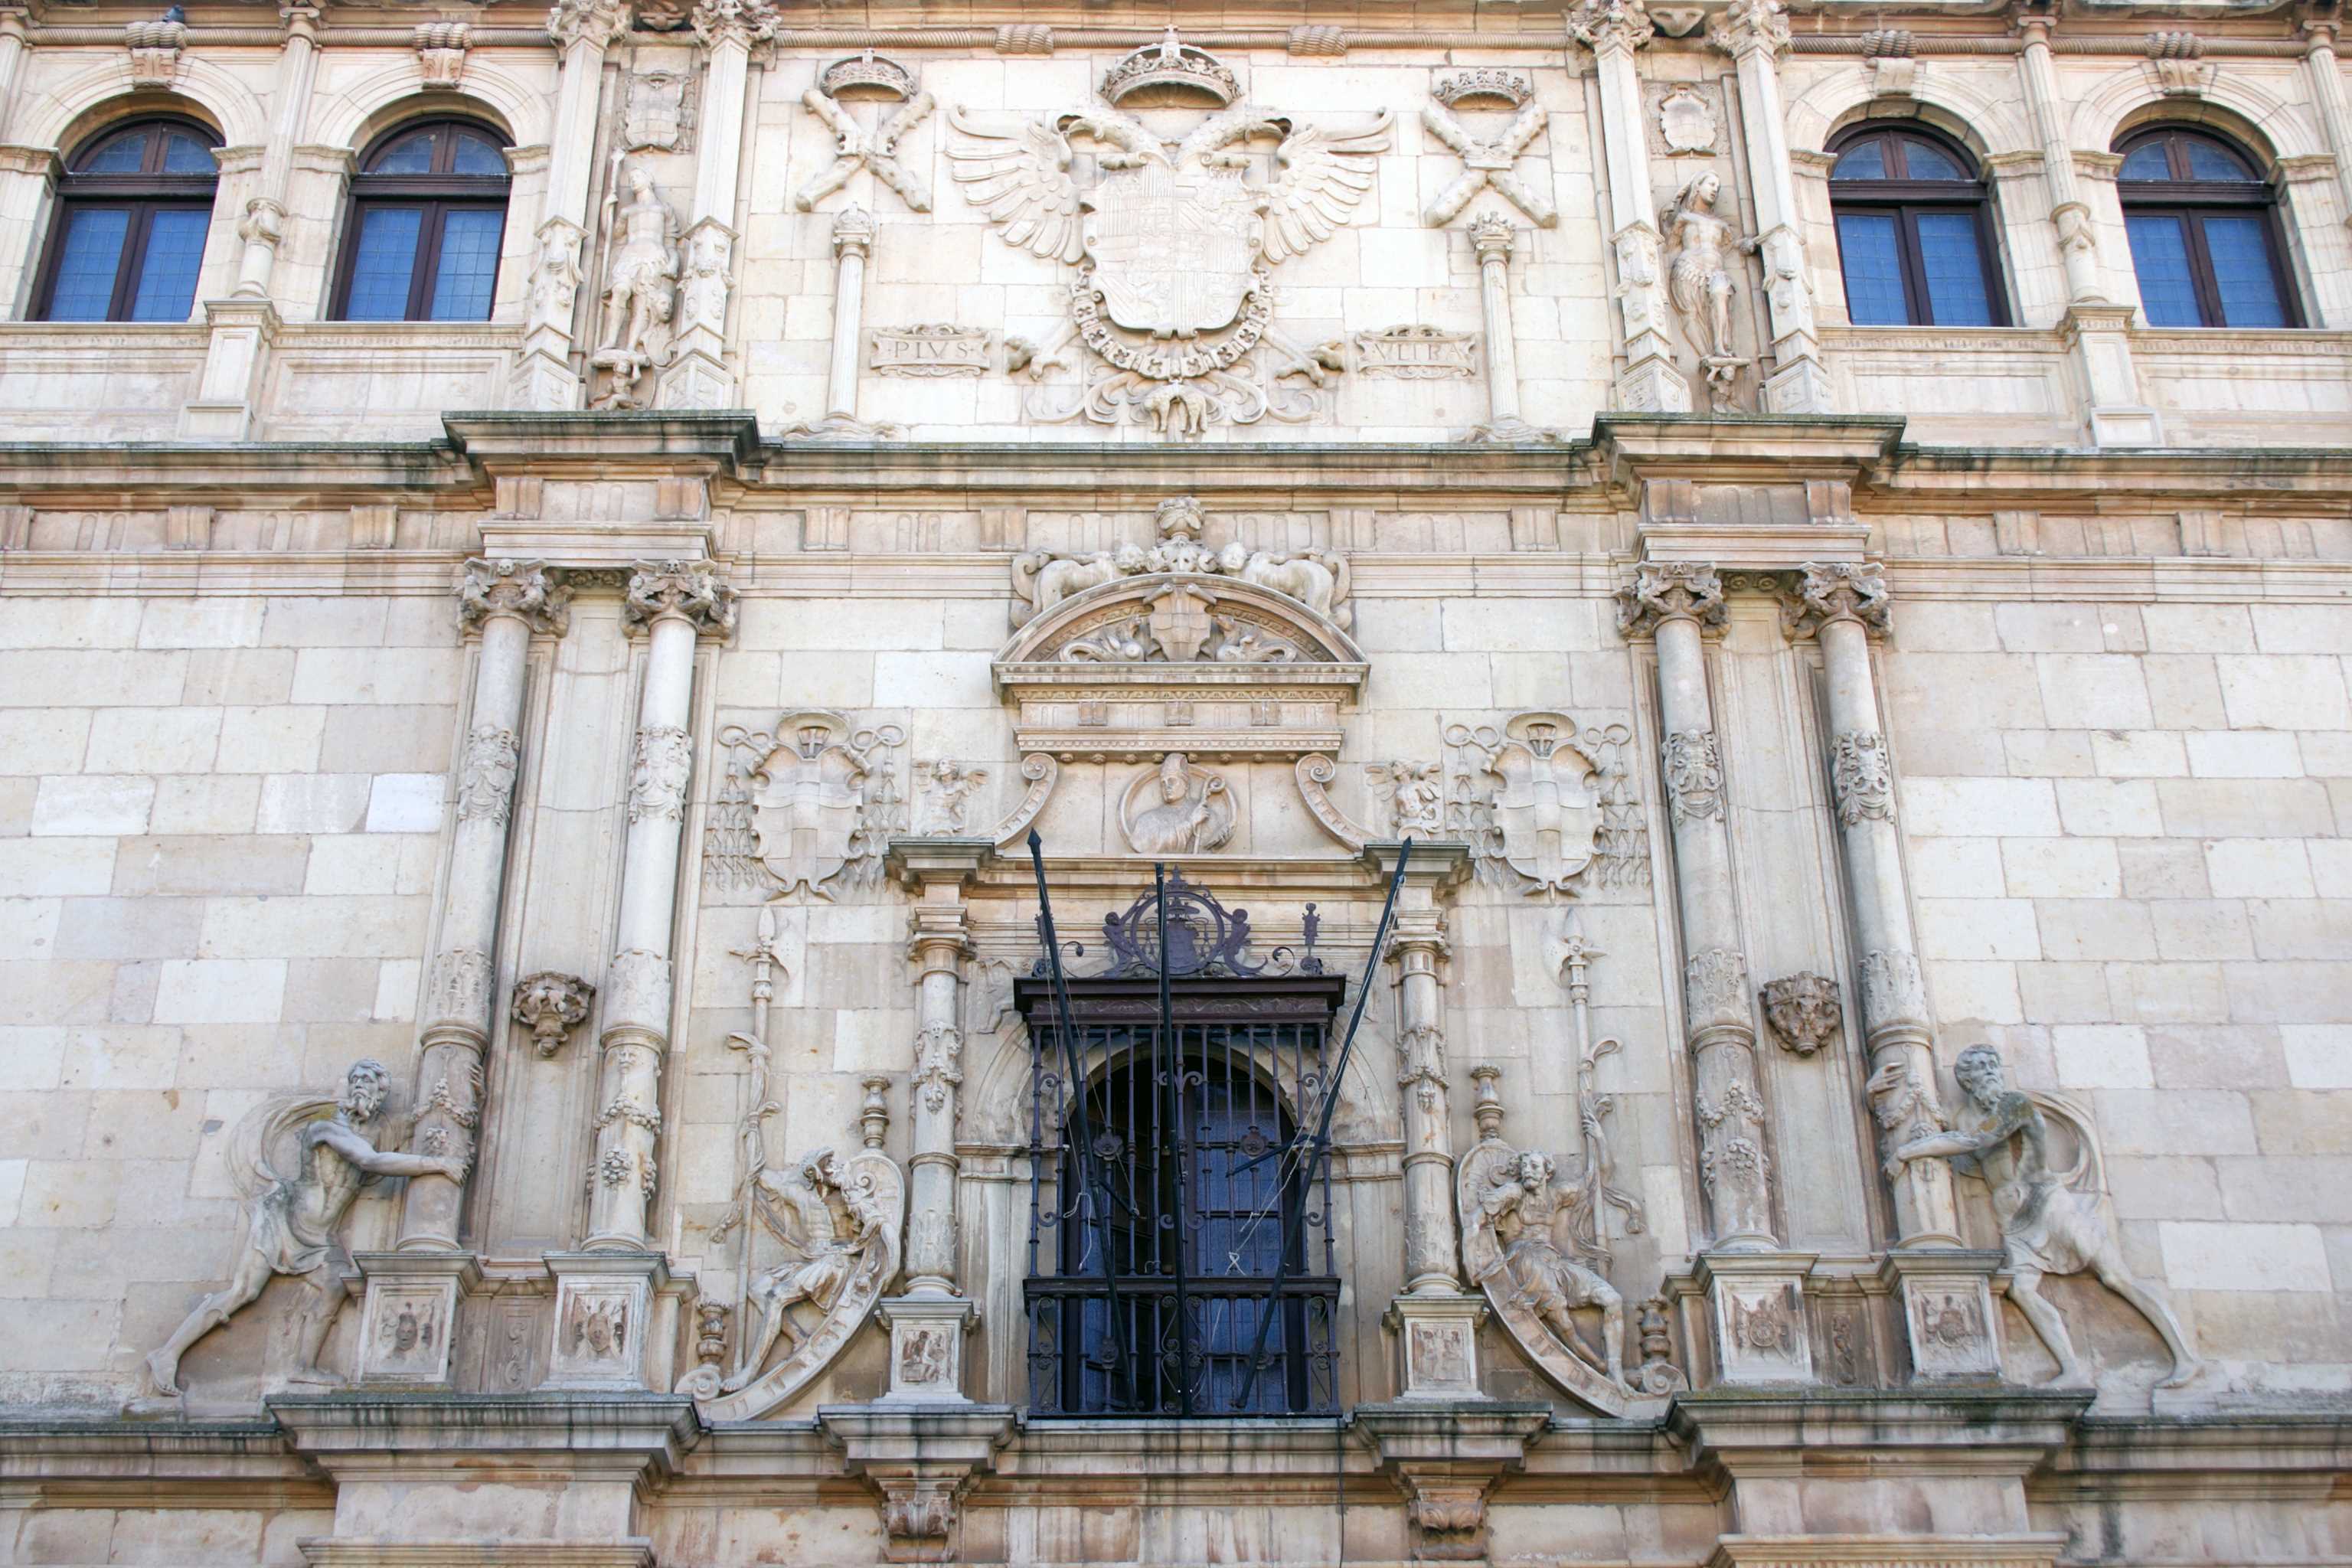 The University of Alcalá